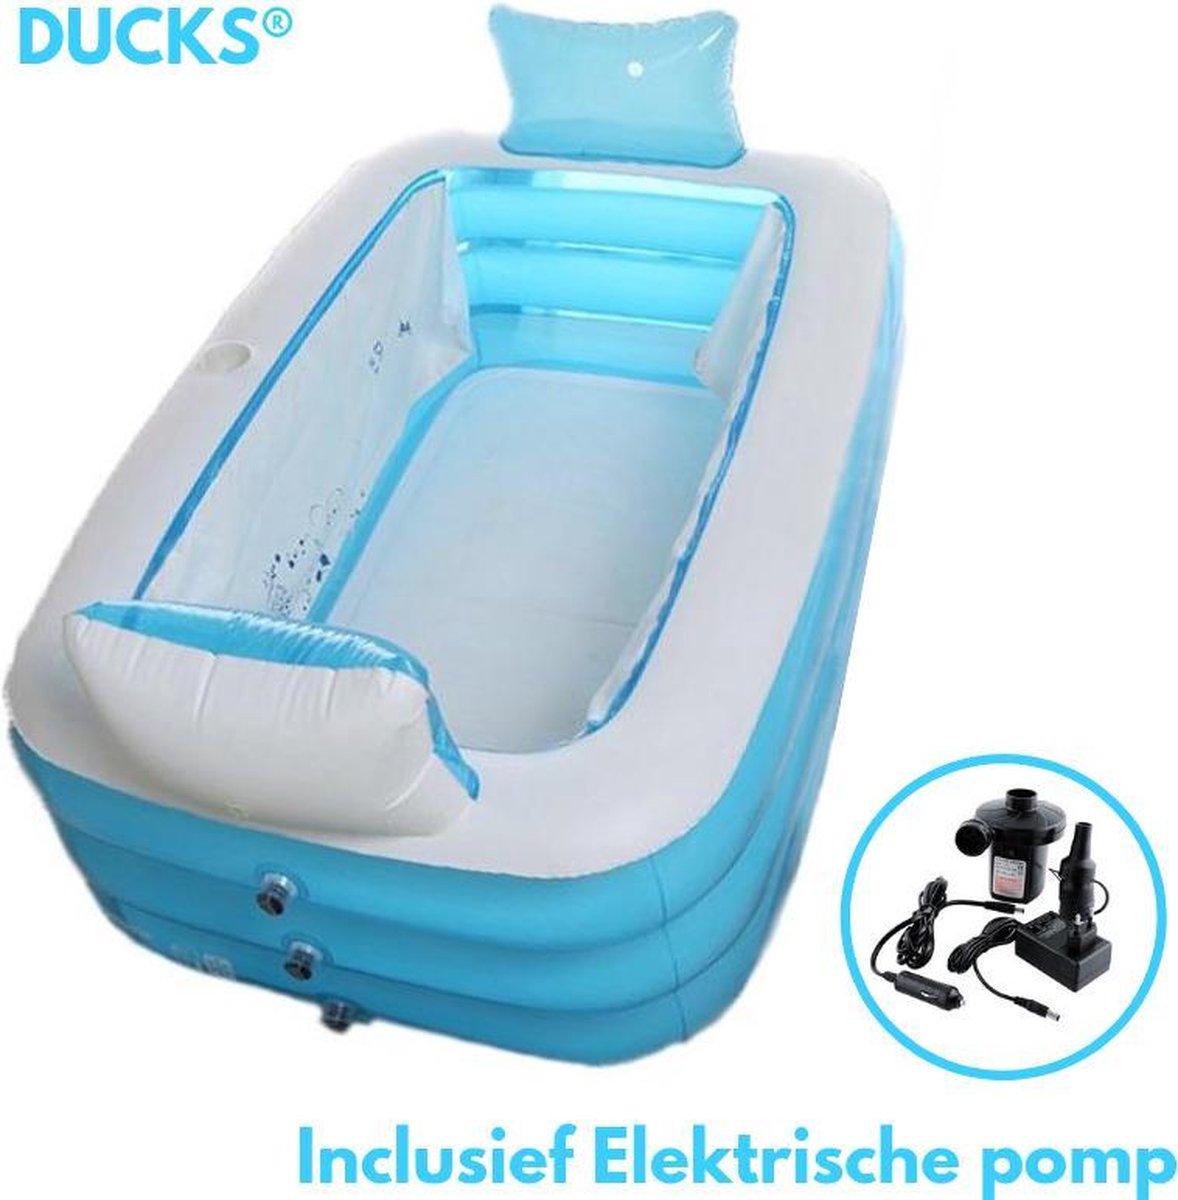 DUCKS® - Opblaasbaar Ligbad voor thuis - met Gratis Elektrische Pomp -  Tubble Bath -... | bol.com